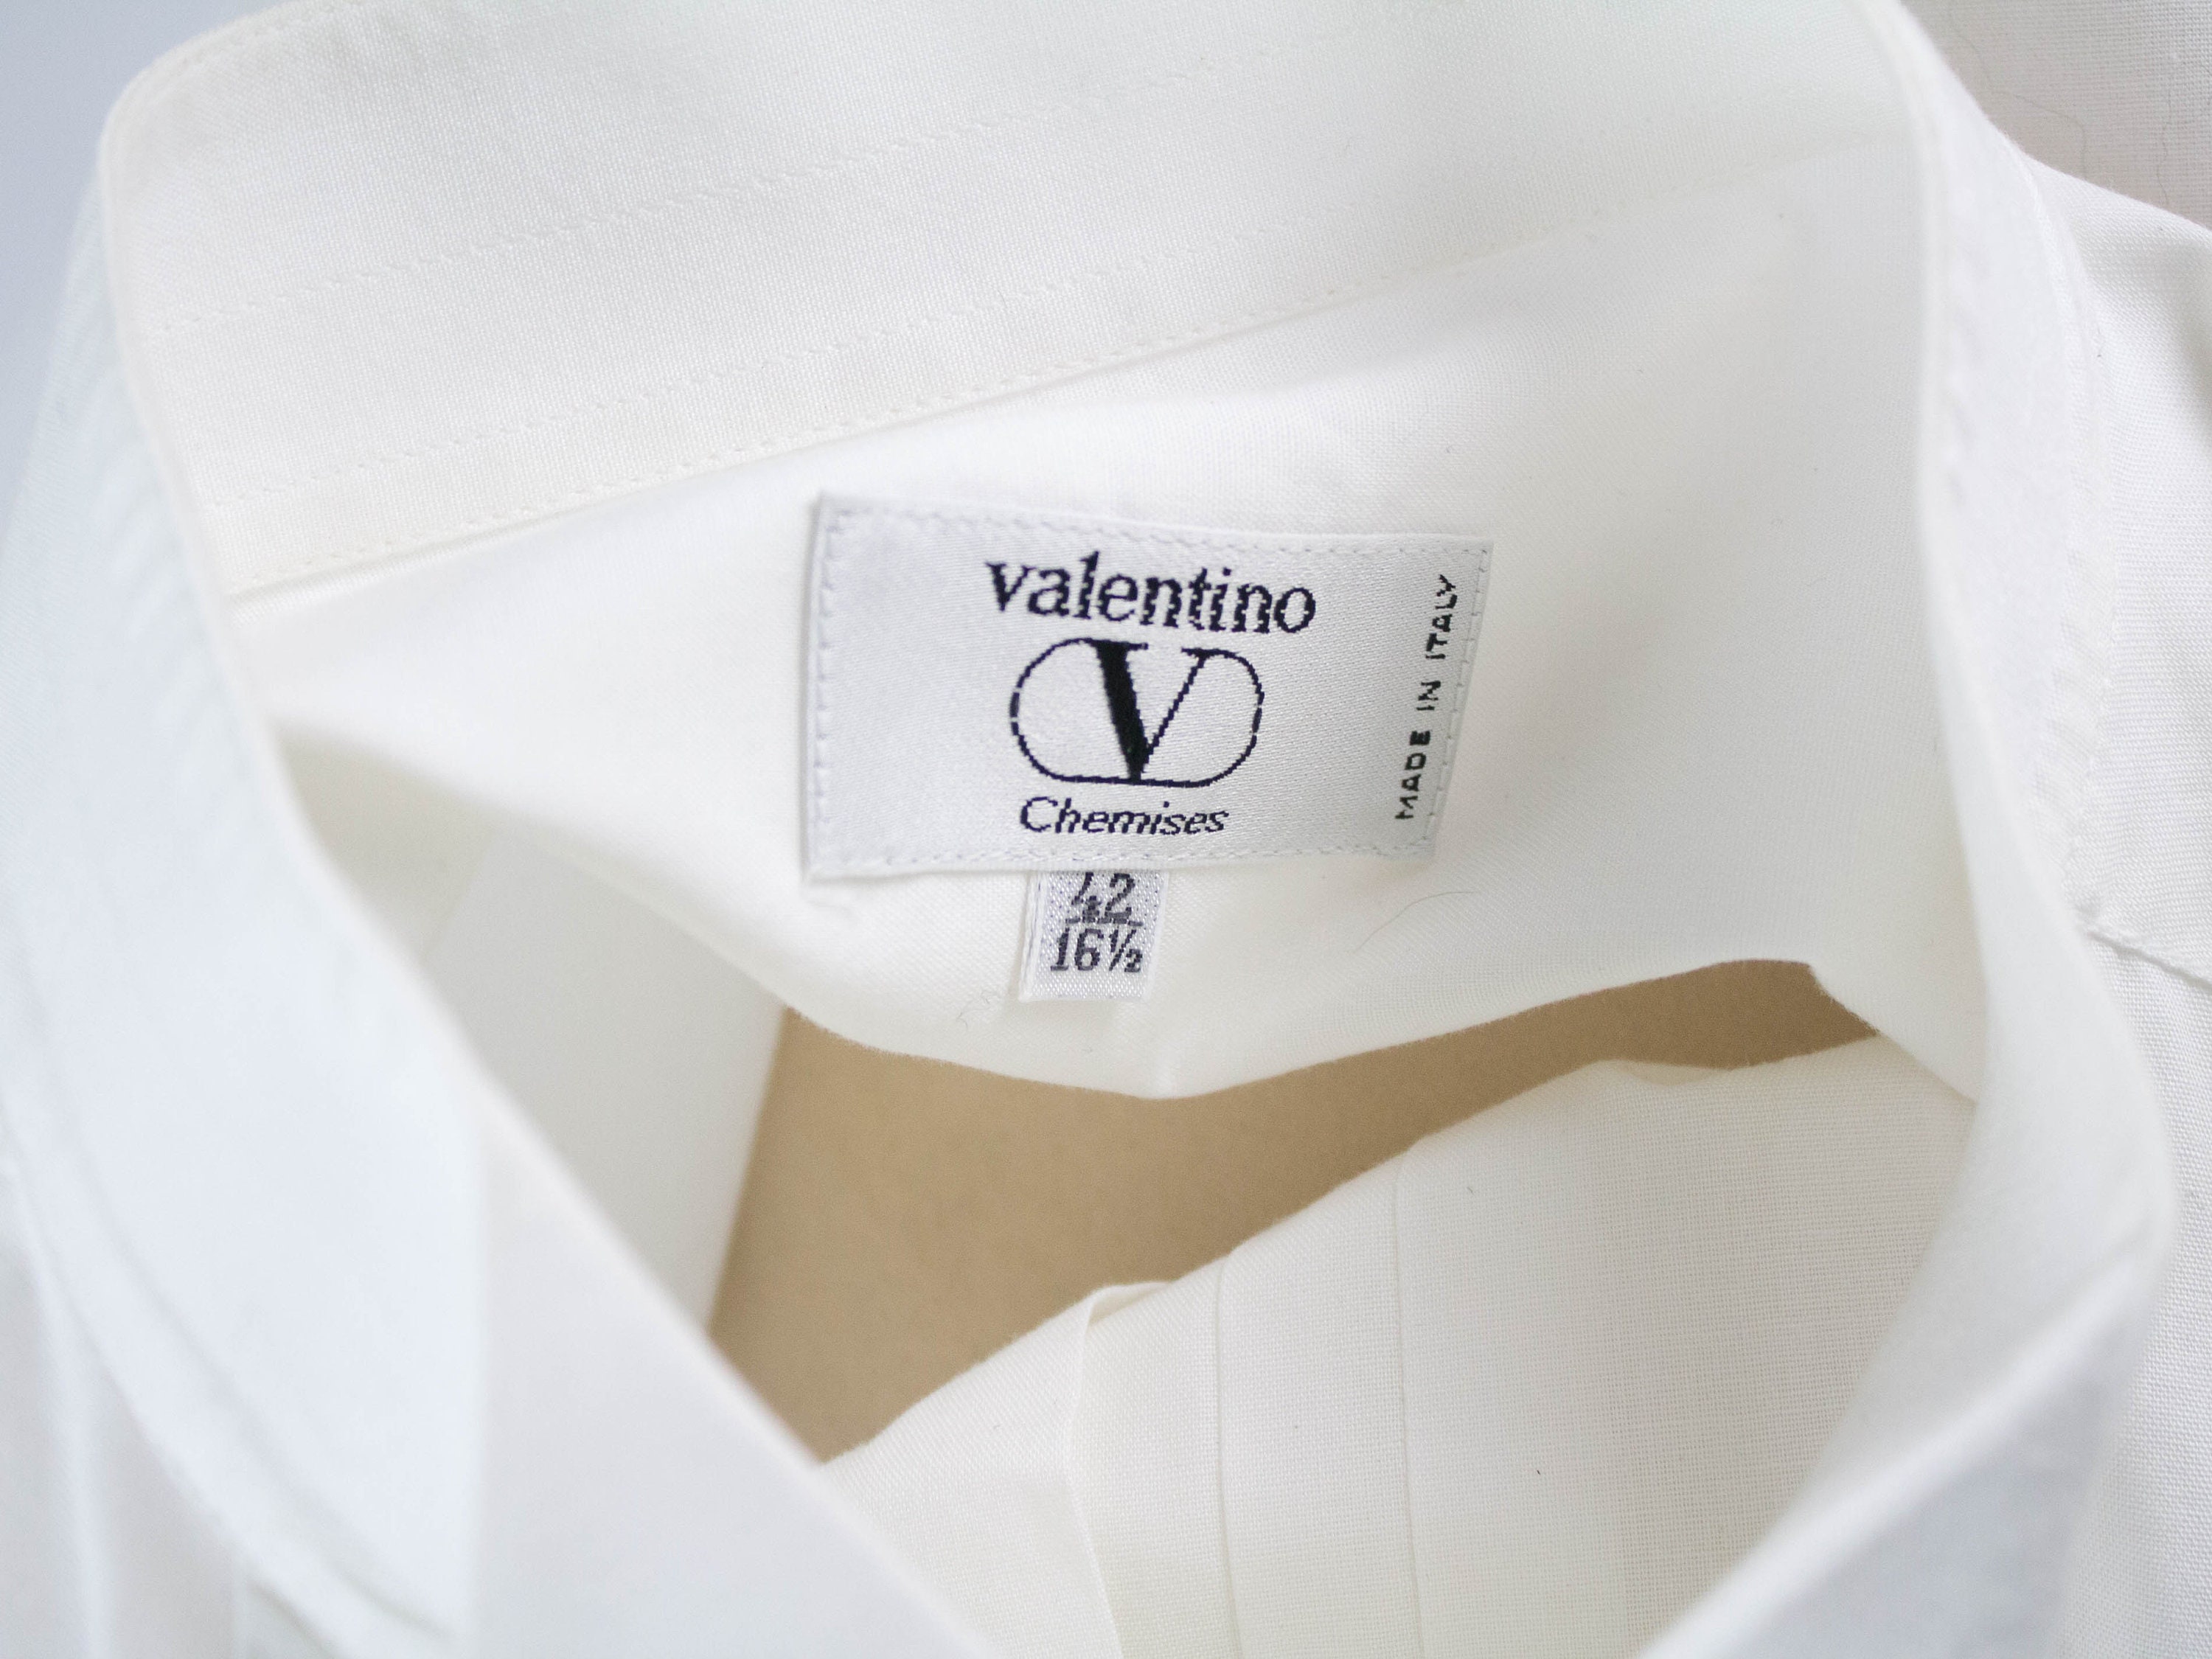 Valentino Vintage Valentino Chemises 90s Vintage 1990s - Etsy